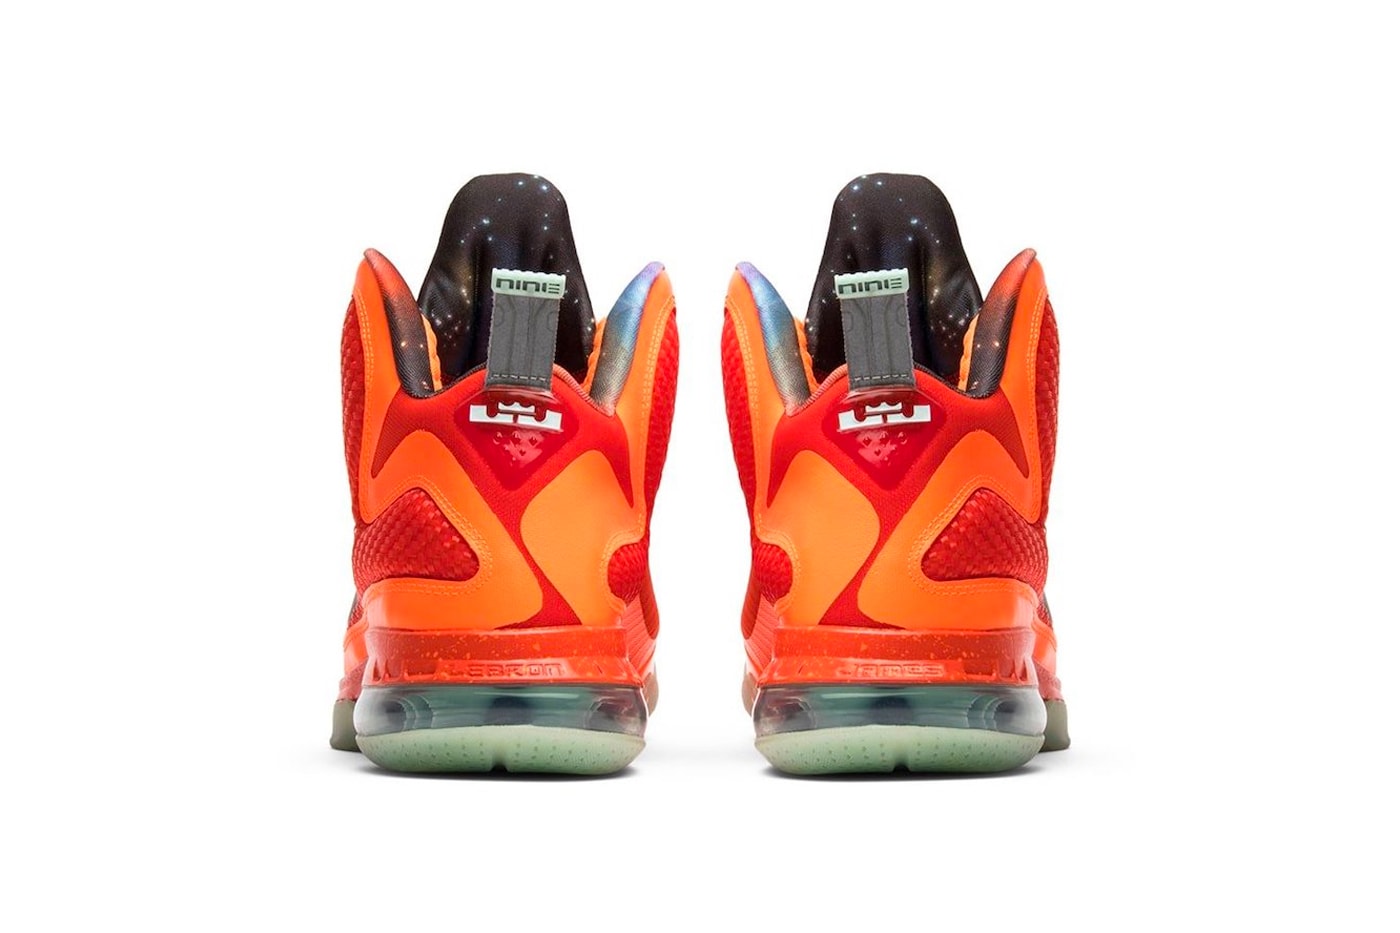 Nike LeBron 9 “Big Bang” Release Date footwear sneakers swooshes All-Star Weekend mesh Total Orange Metallic Silver Team Orange Mango